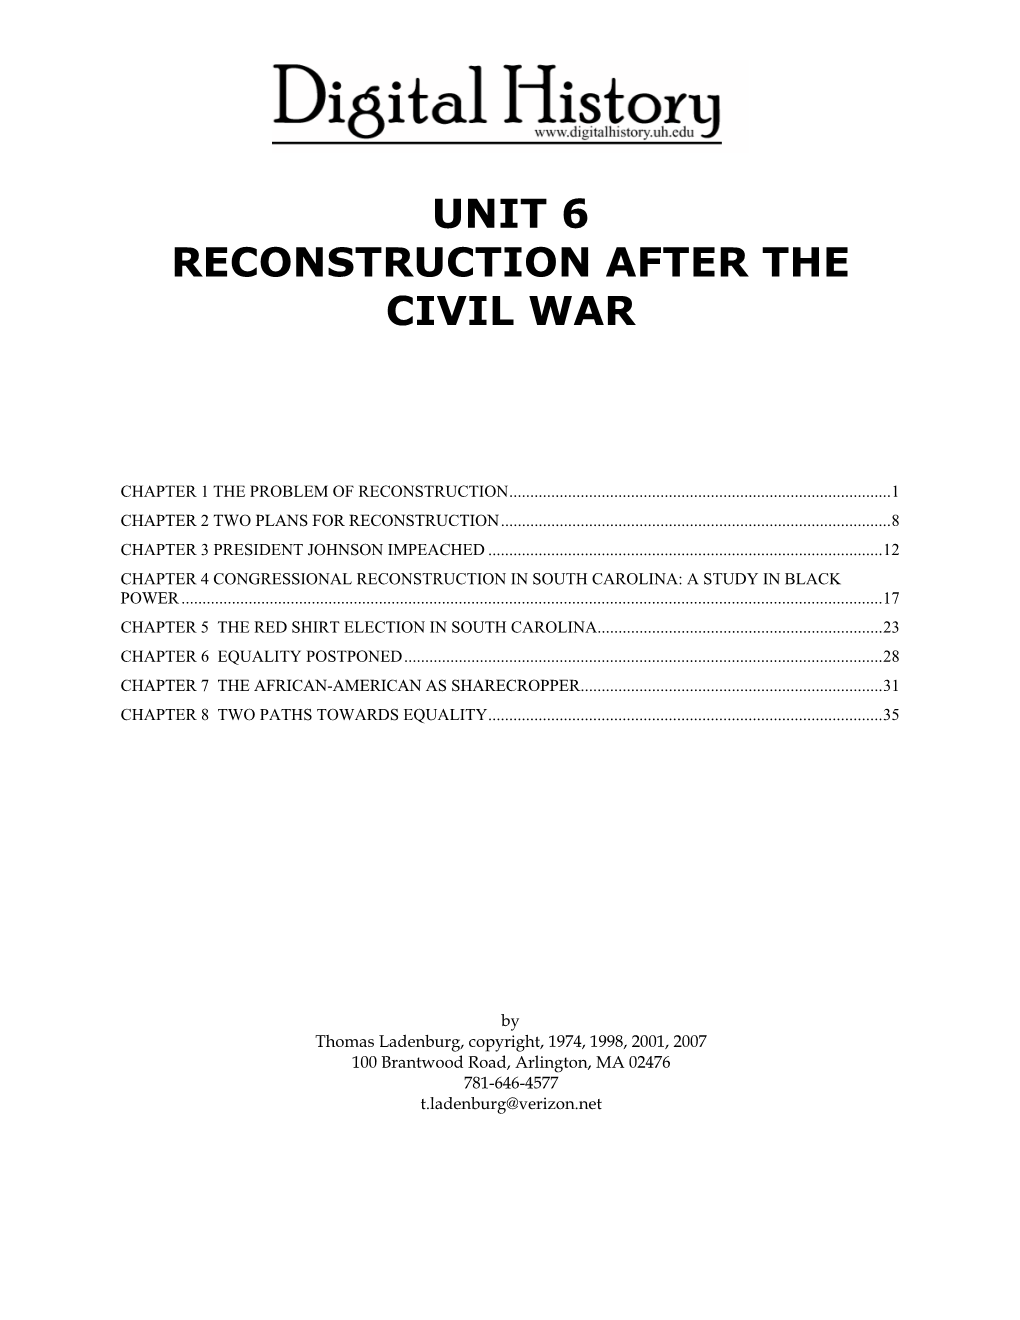 Unit 6 Reconstruction After the Civil War